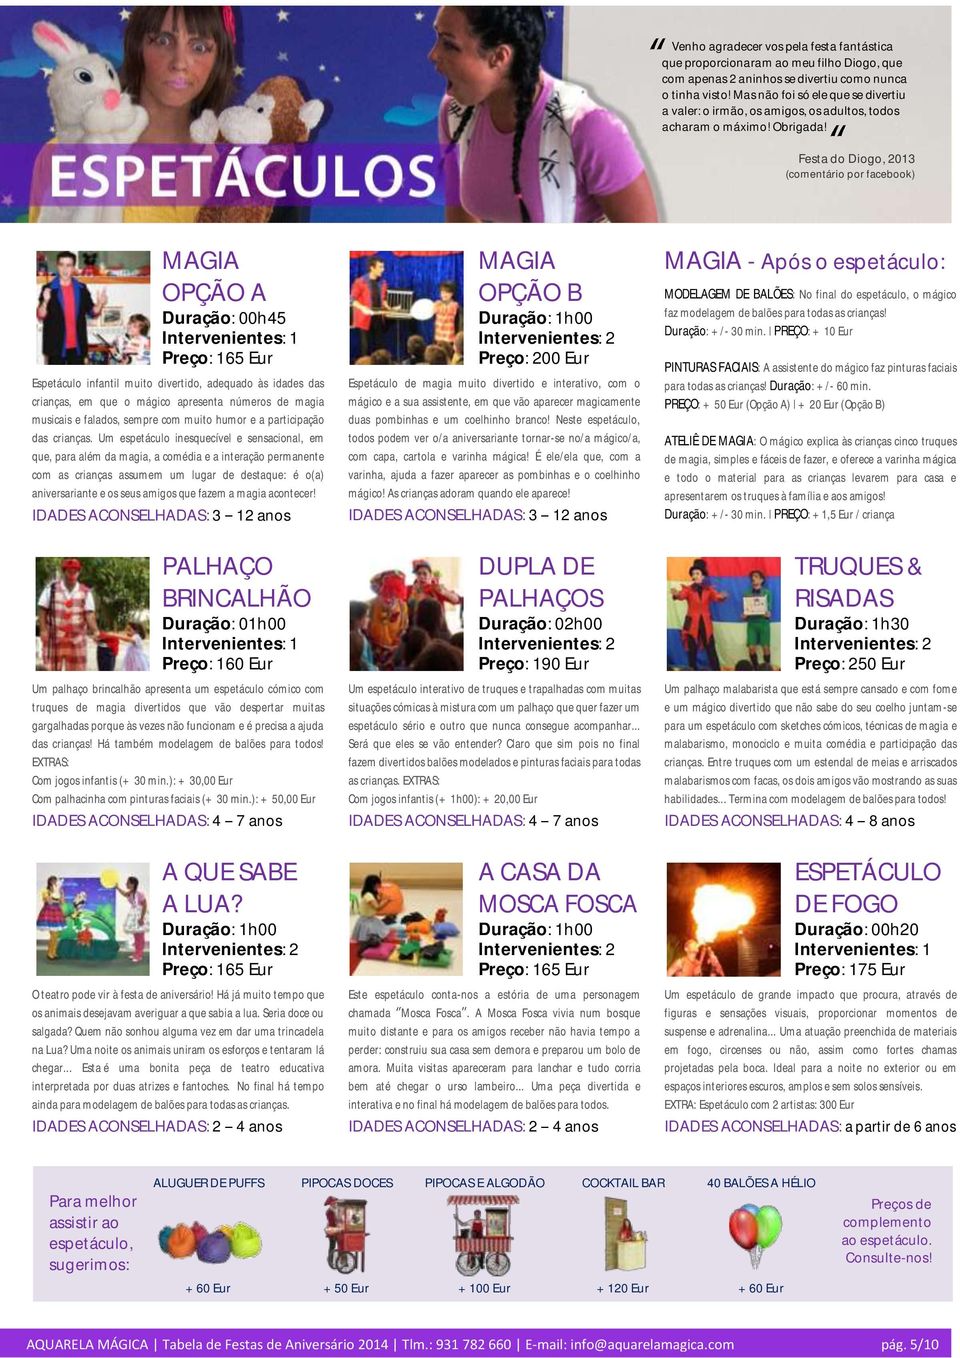 Festa do Diogo, 2013 (comentário por facebook) MAGIA OPÇÃO A Duração: 00h45 Preço: 165 Espetáculo infantil muito divertido, adequado às idades das crianças, em que o mágico apresenta números de magia